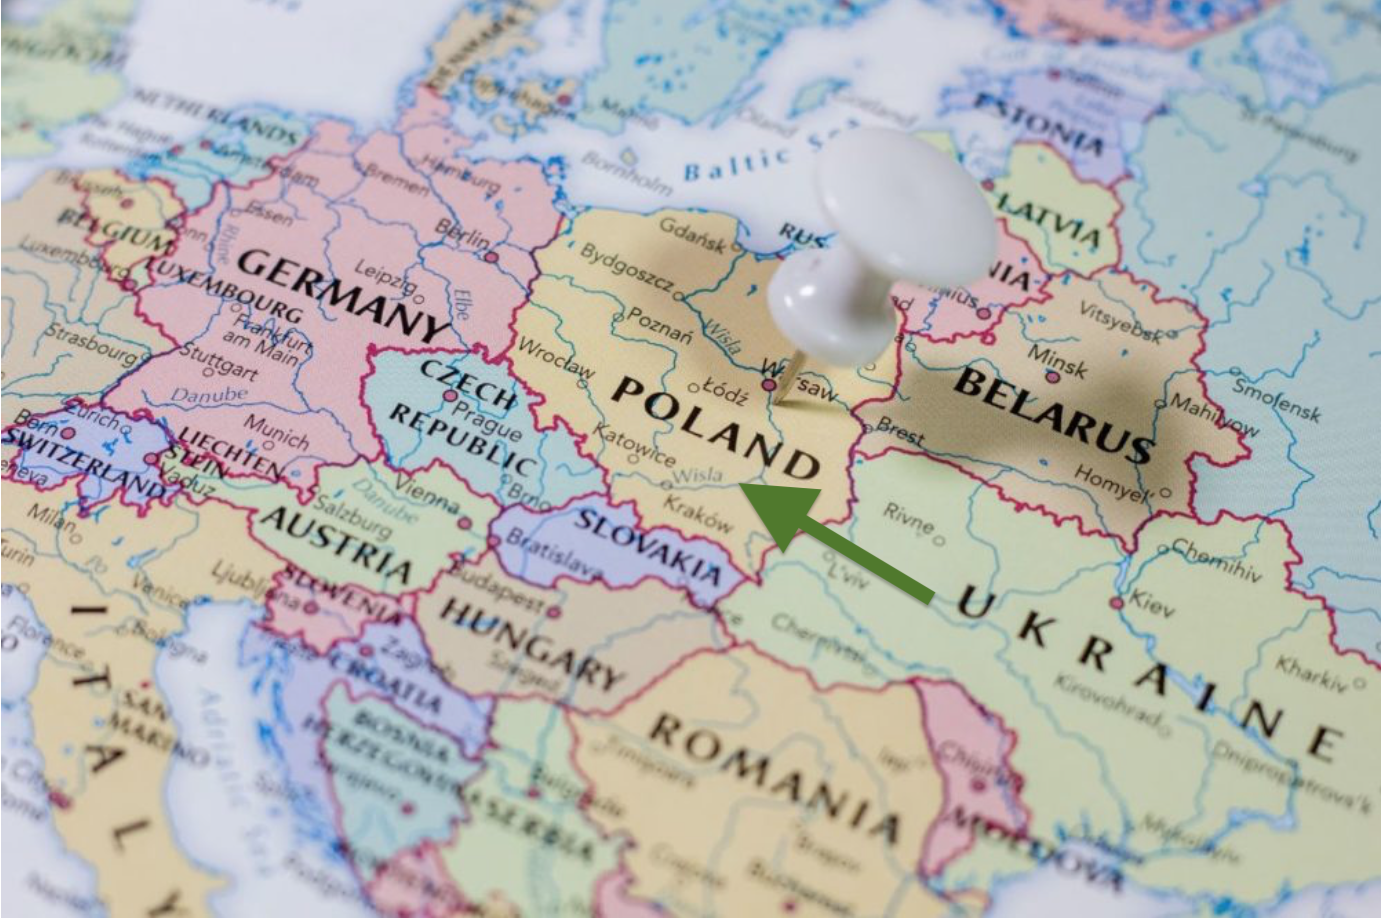 Poland 🇵🇱 asks EU 🇪🇺 to take action to limit Ukrainian 🇺🇦 imports.